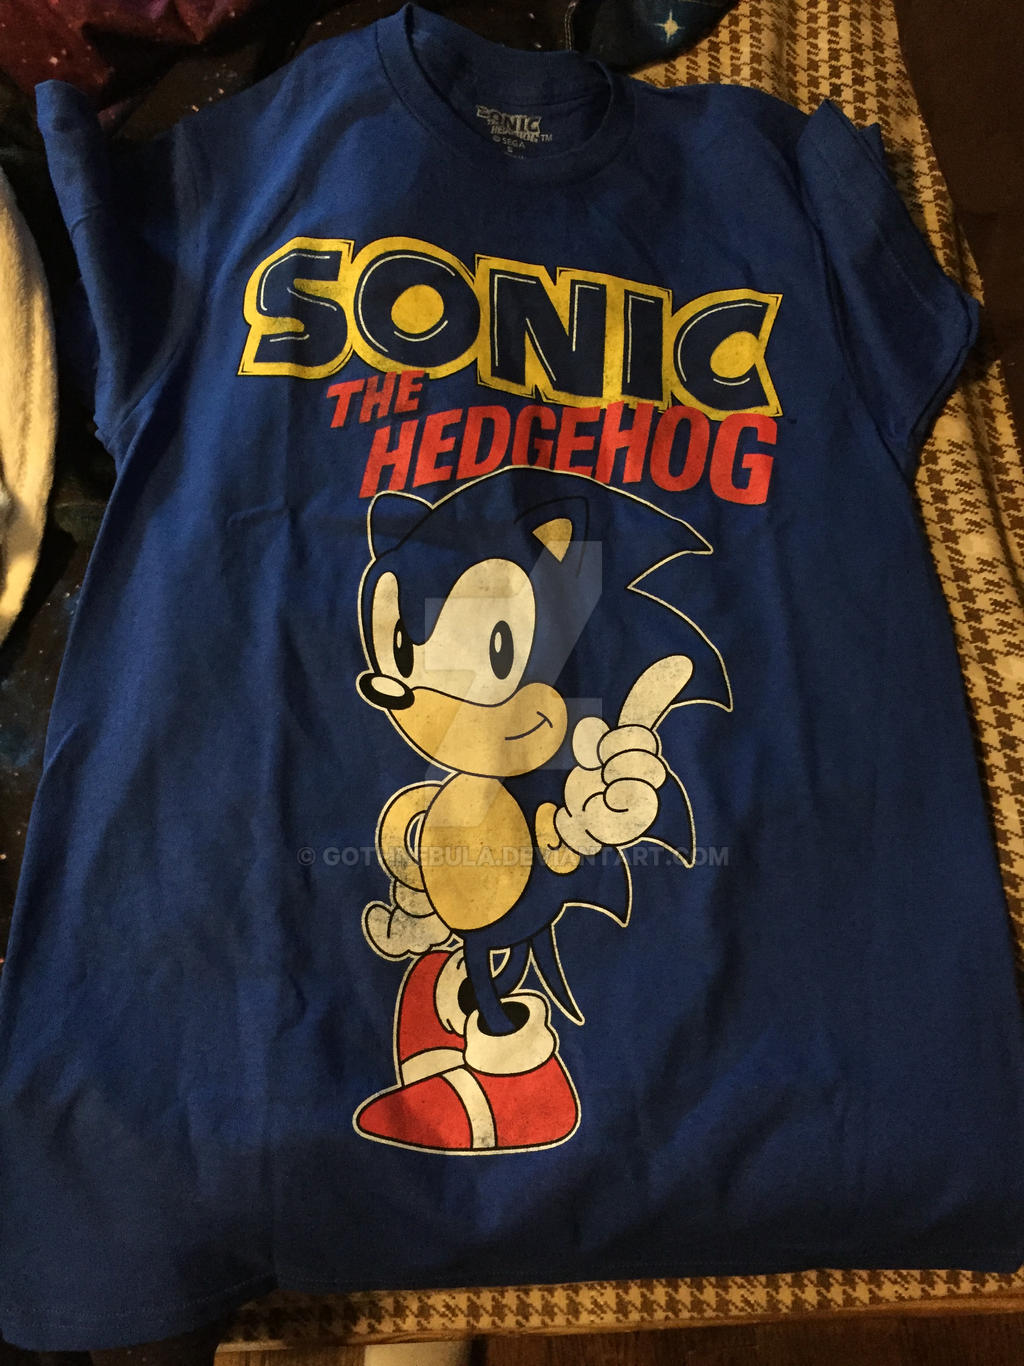 Økologi Apparatet plukke Sonic the Hedgehog T-Shirt by GothNebula on DeviantArt